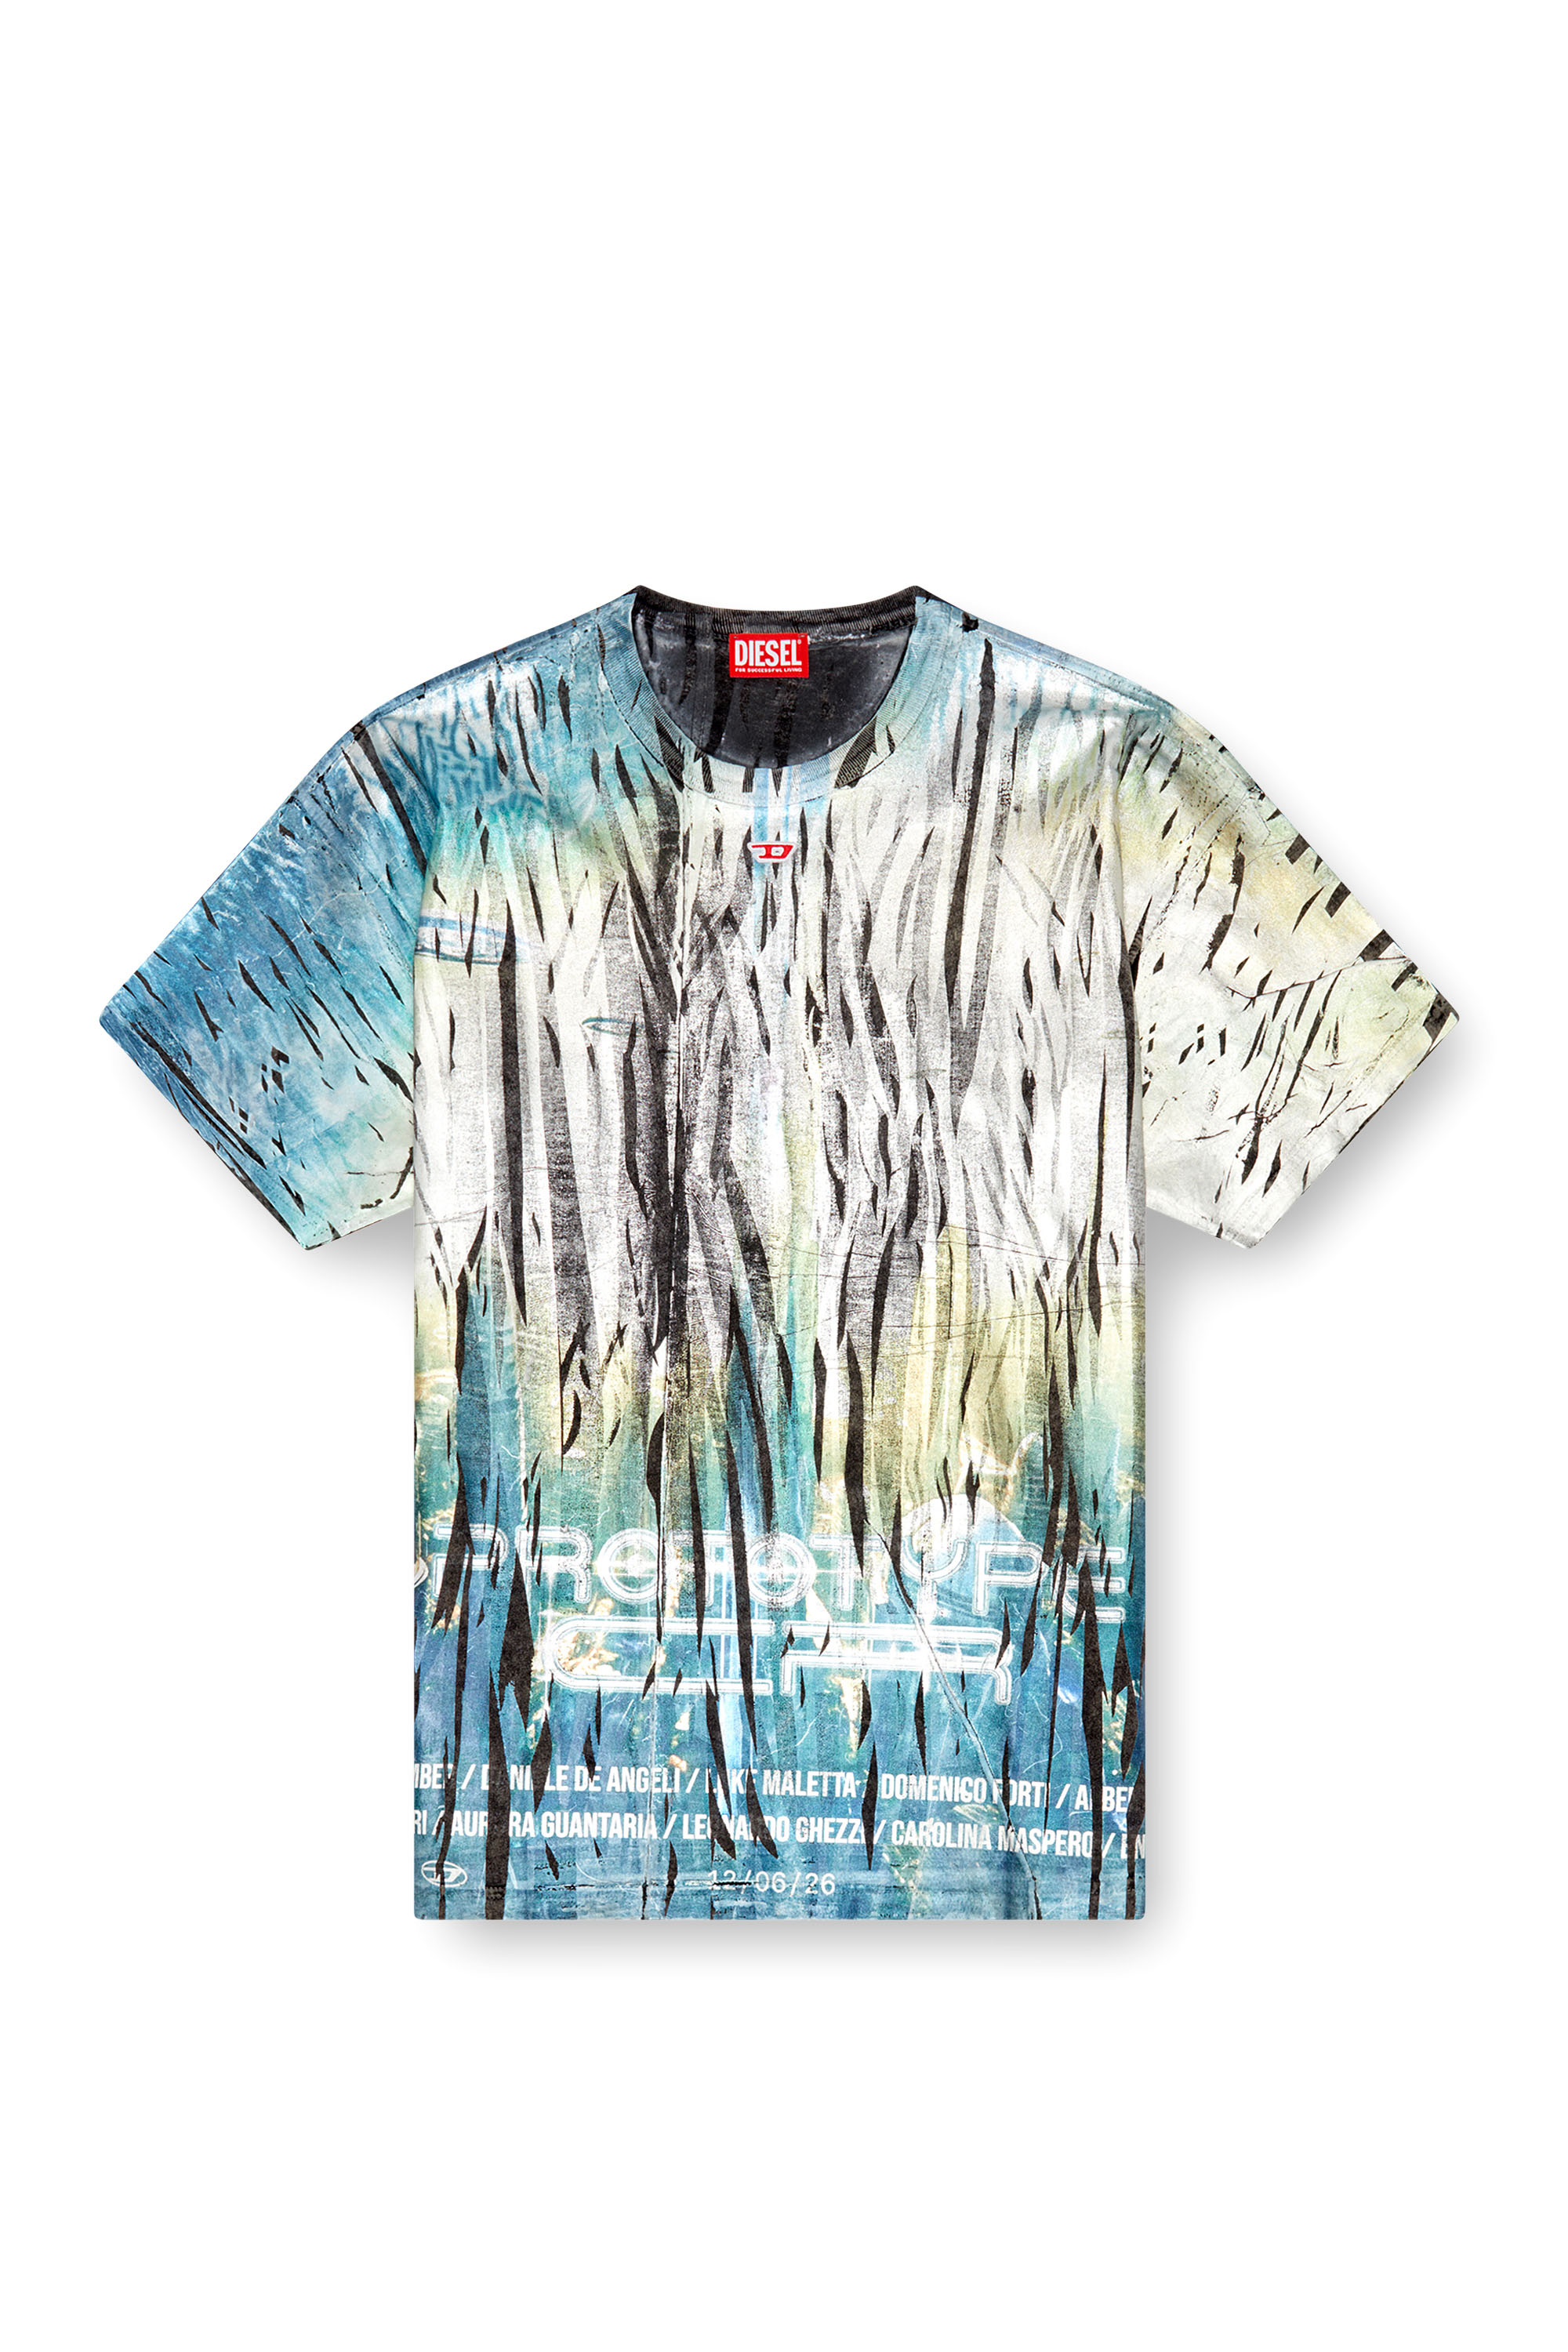 Diesel - T-BORD-Q1, Uomo T-shirt con trattamento laminato stropicciato in Multicolor - Image 3